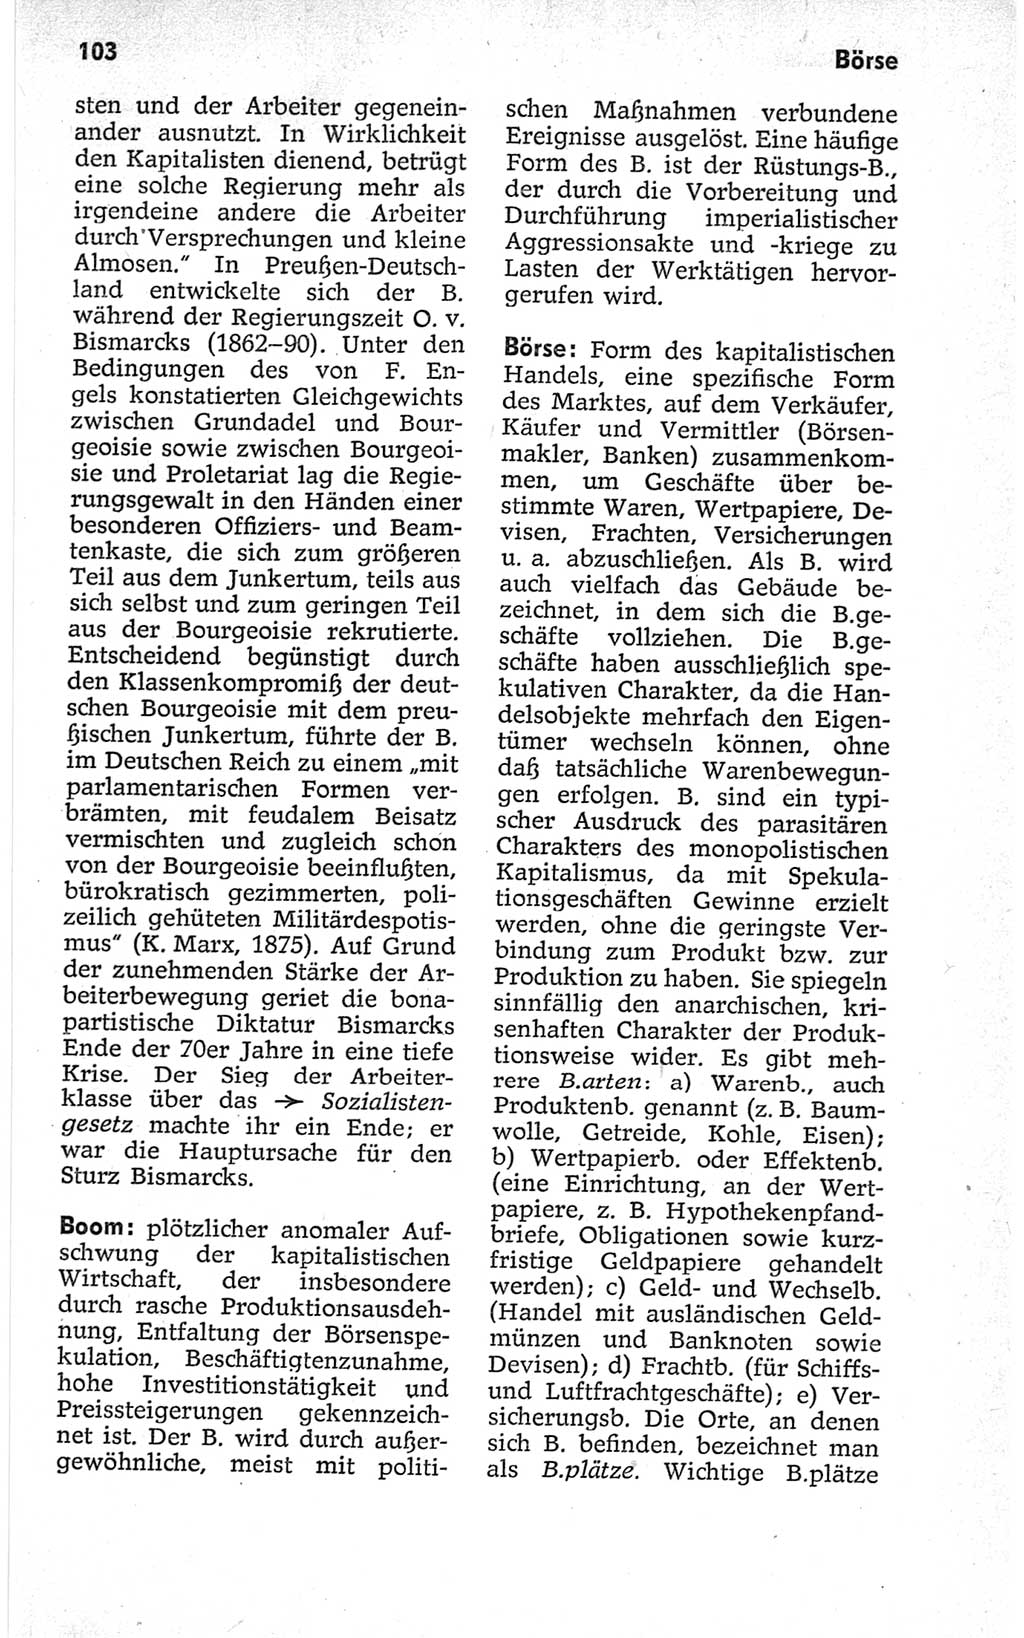 Kleines politisches Wörterbuch [Deutsche Demokratische Republik (DDR)] 1967, Seite 103 (Kl. pol. Wb. DDR 1967, S. 103)